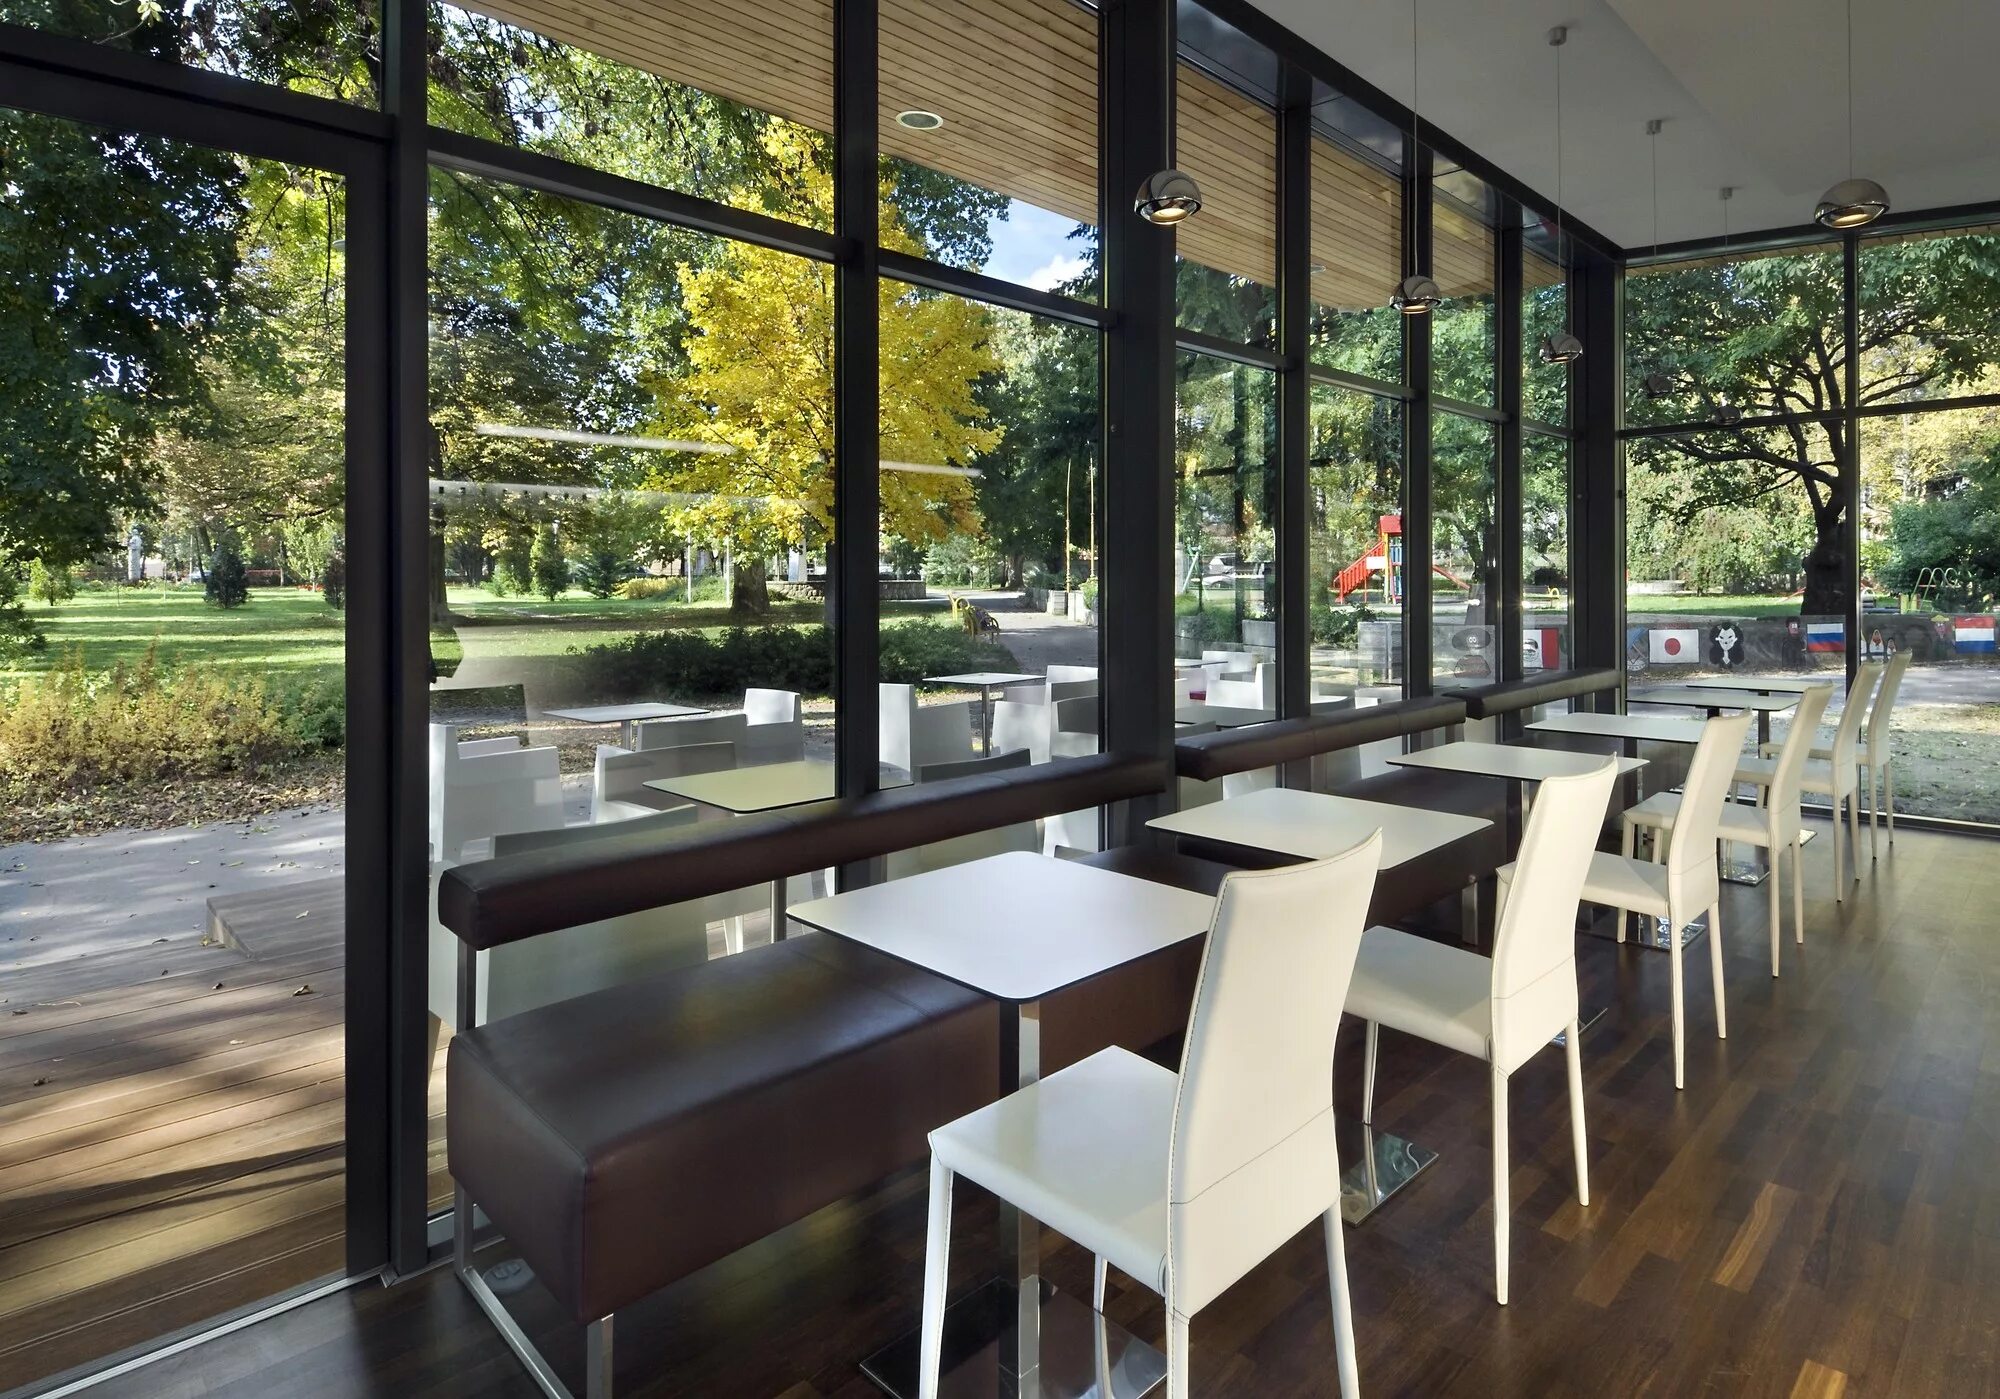 Кафе с панорамными окнами. Интерьер кофе с понарамными окнами. Интерьер кафе с панорамными окнами. Кофейня с панорамными окнами.